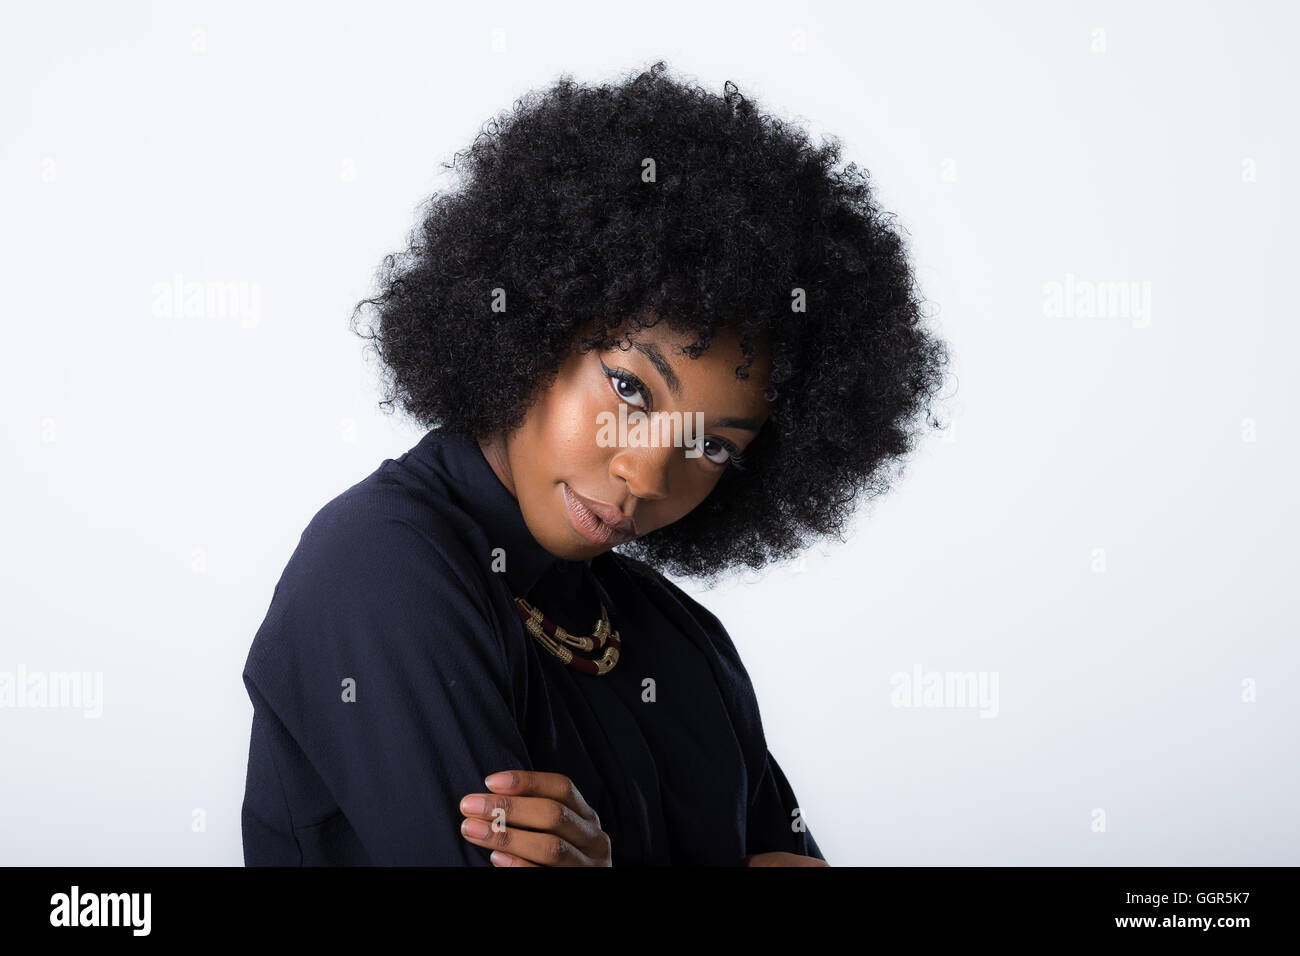 Afro-caraibica donna nella sua 20s di ripresa delle immagini di moda Foto Stock